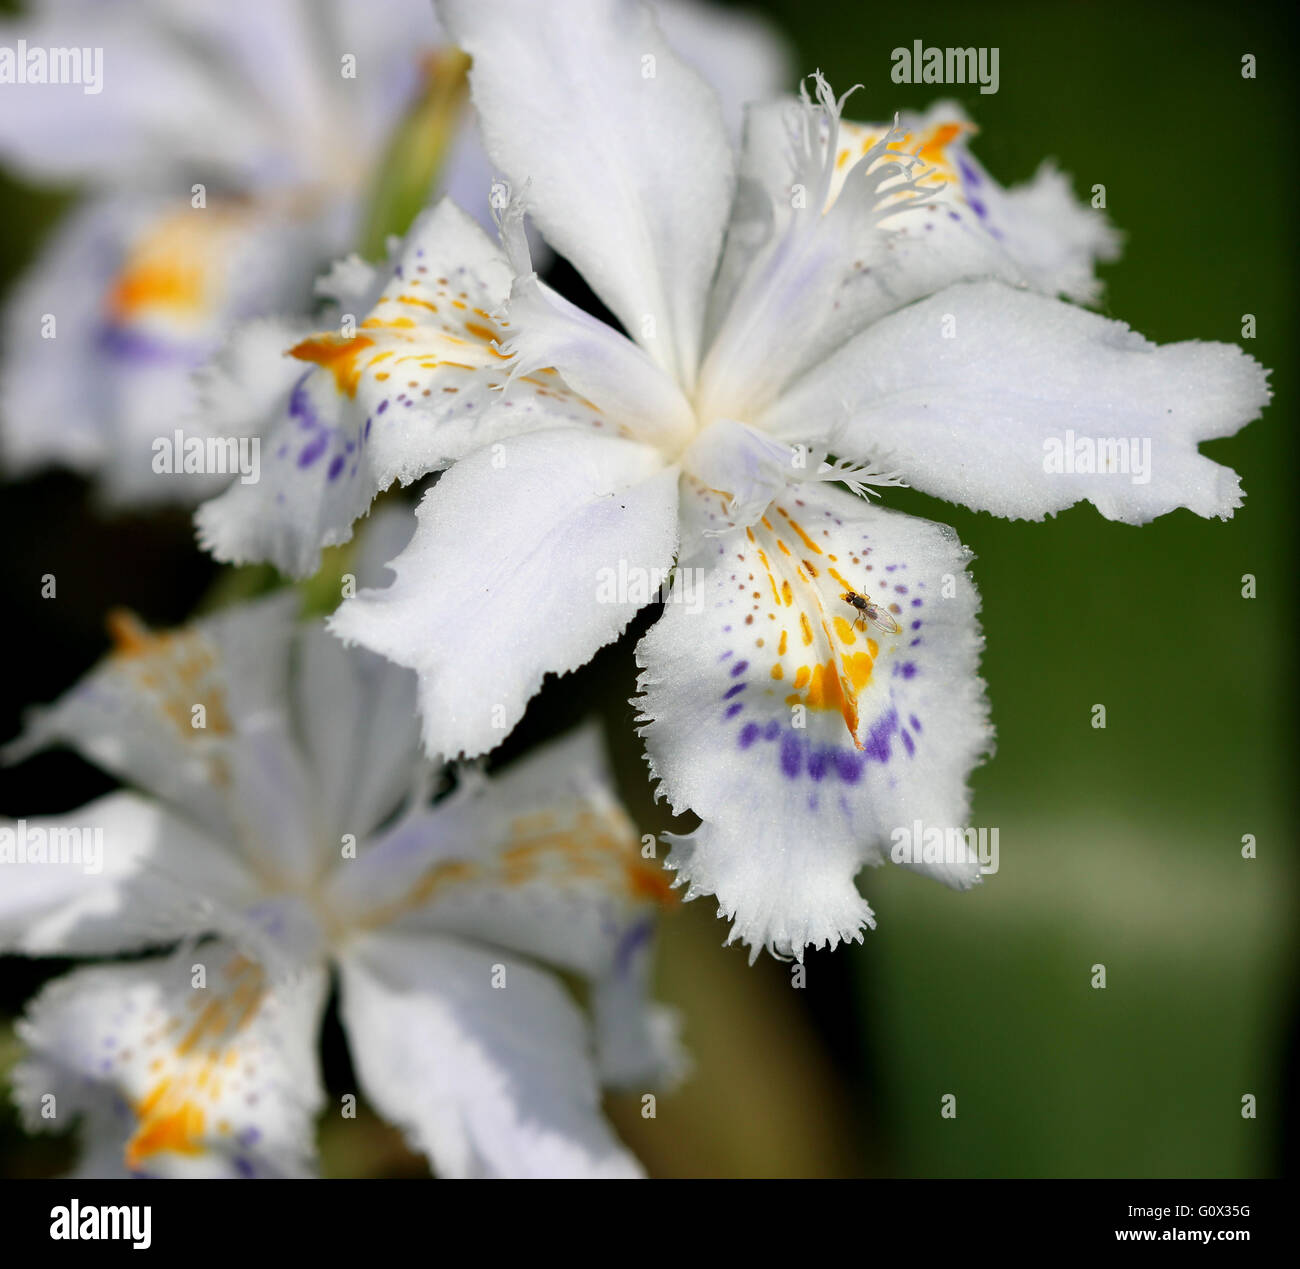 Iris japonica, Iris, fleur Papillon, herbe vivace rhizomateuse avec blanc à fleurs lavande pâle Banque D'Images